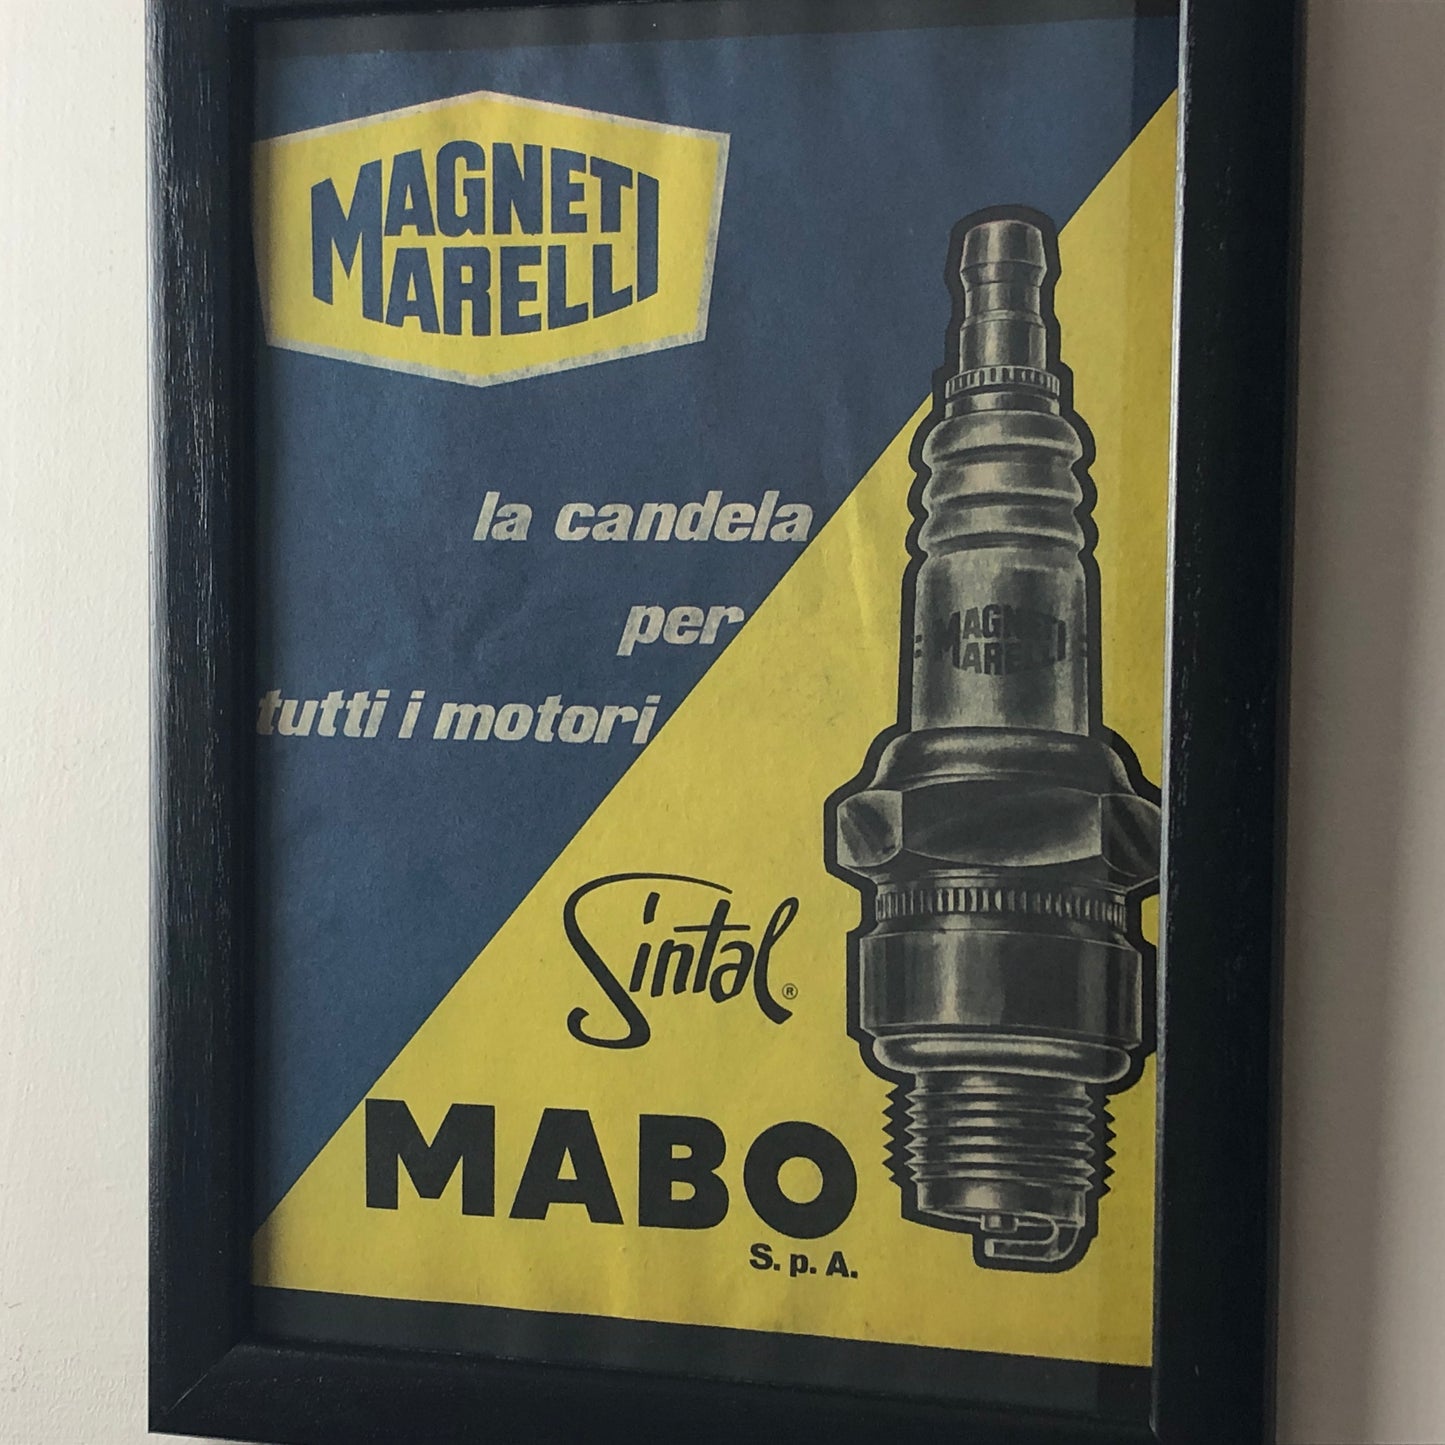 Magneti Marelli, Pubblicità Anno 1960 Candele Magneti Marelli Sintal Disegnata da Amleto Dalla Costa